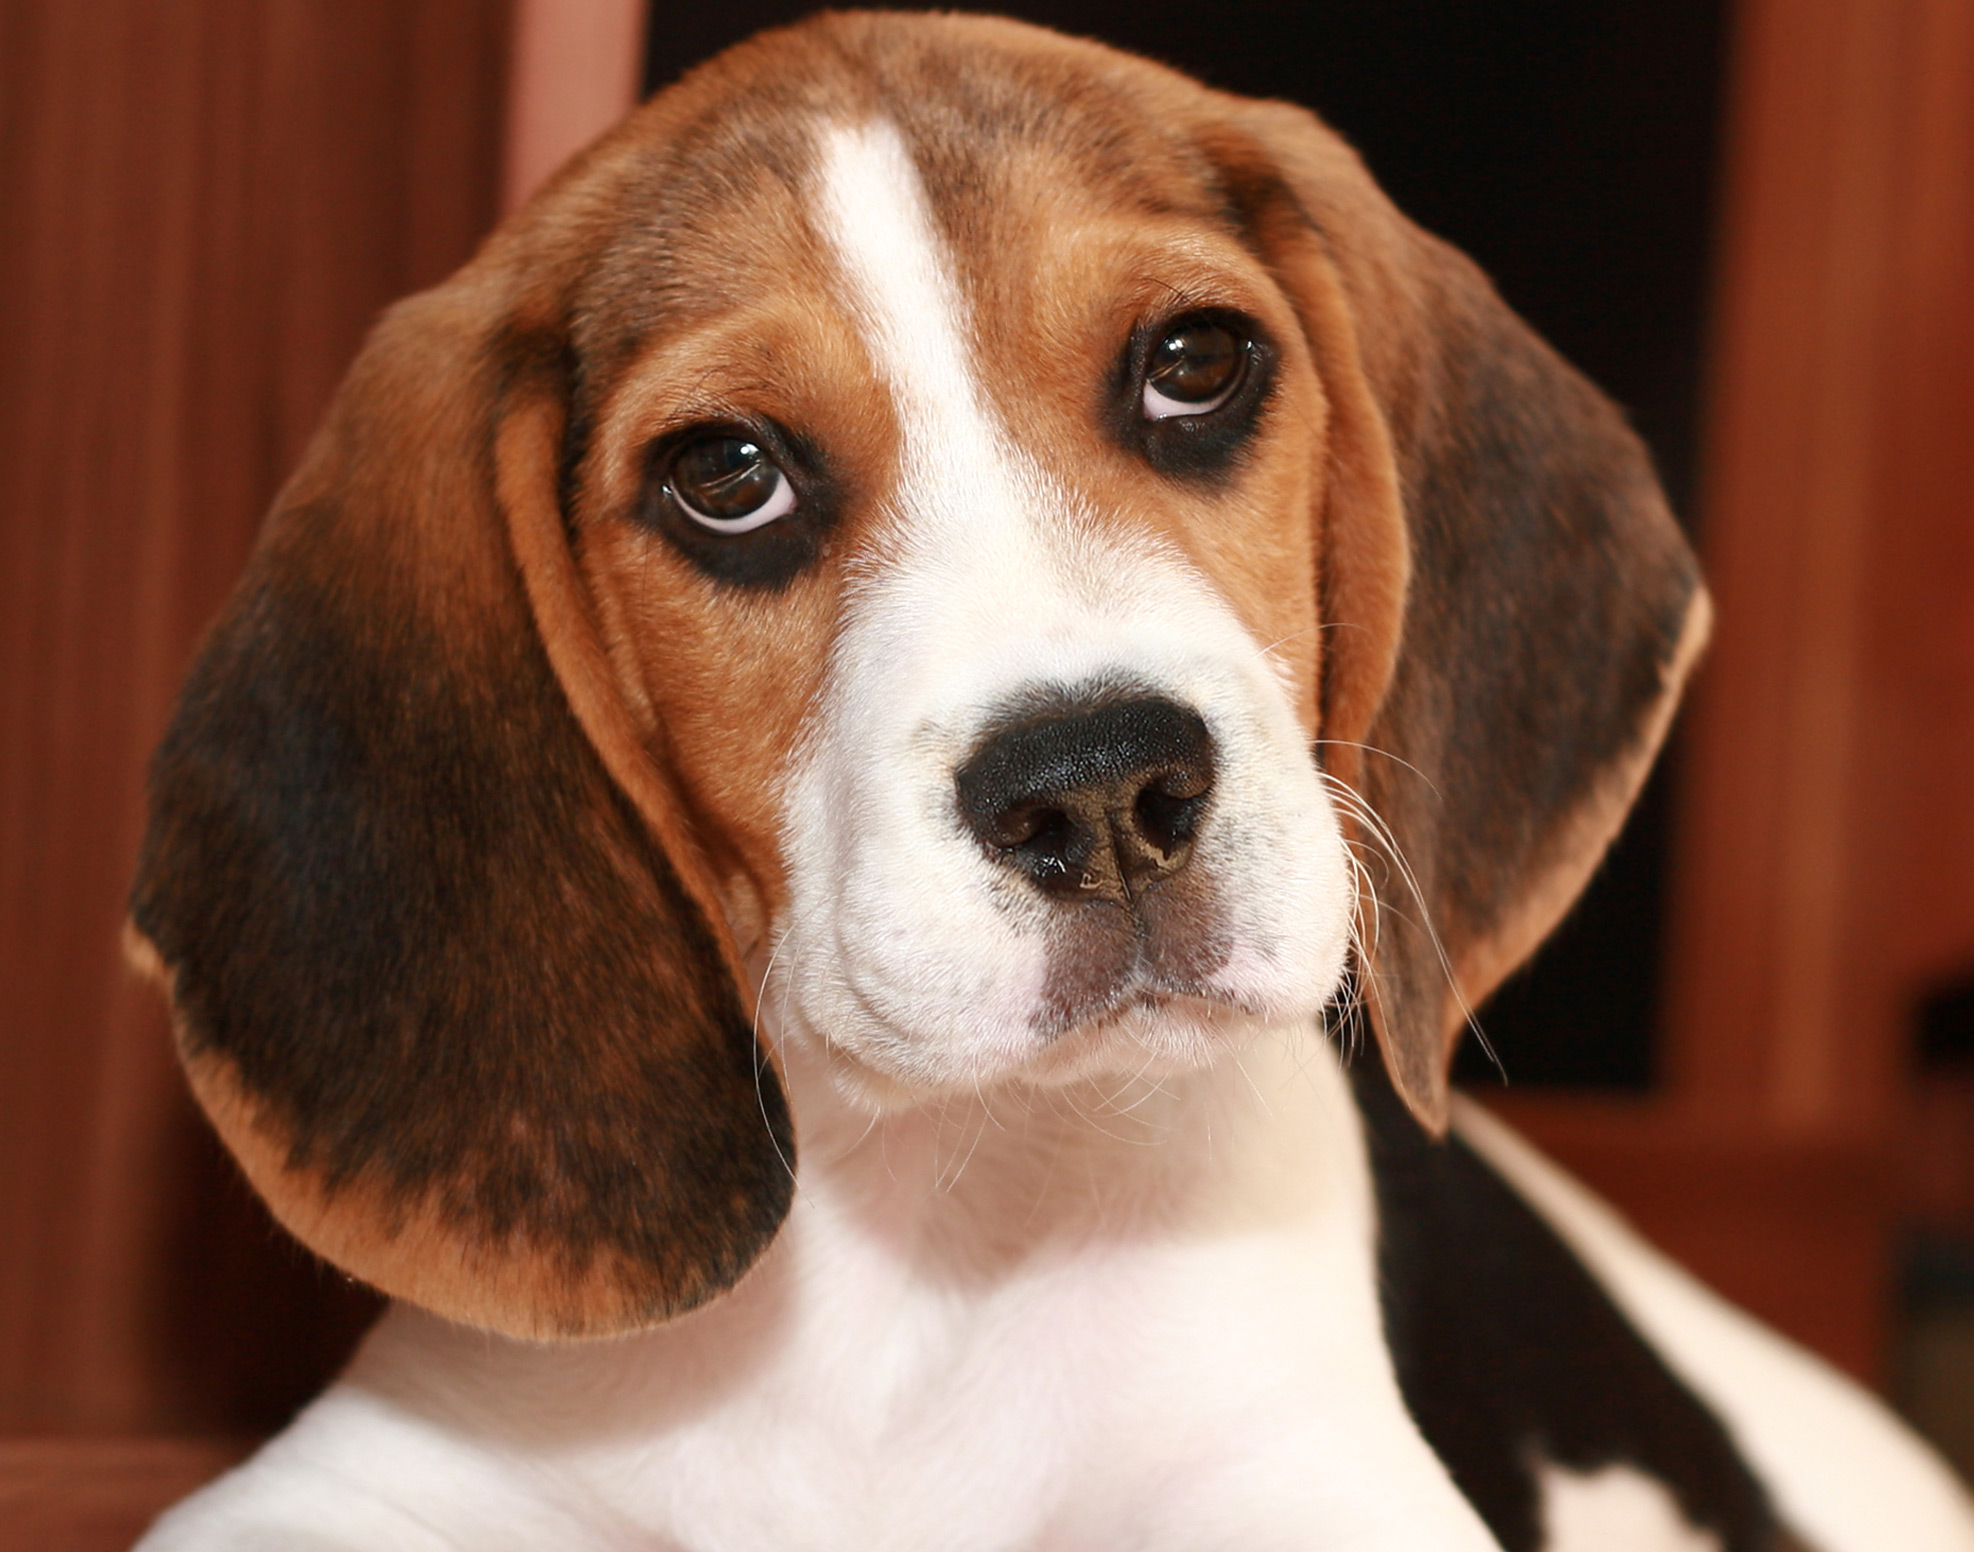 Os olhos pidões são uma característica marcante no Beagle